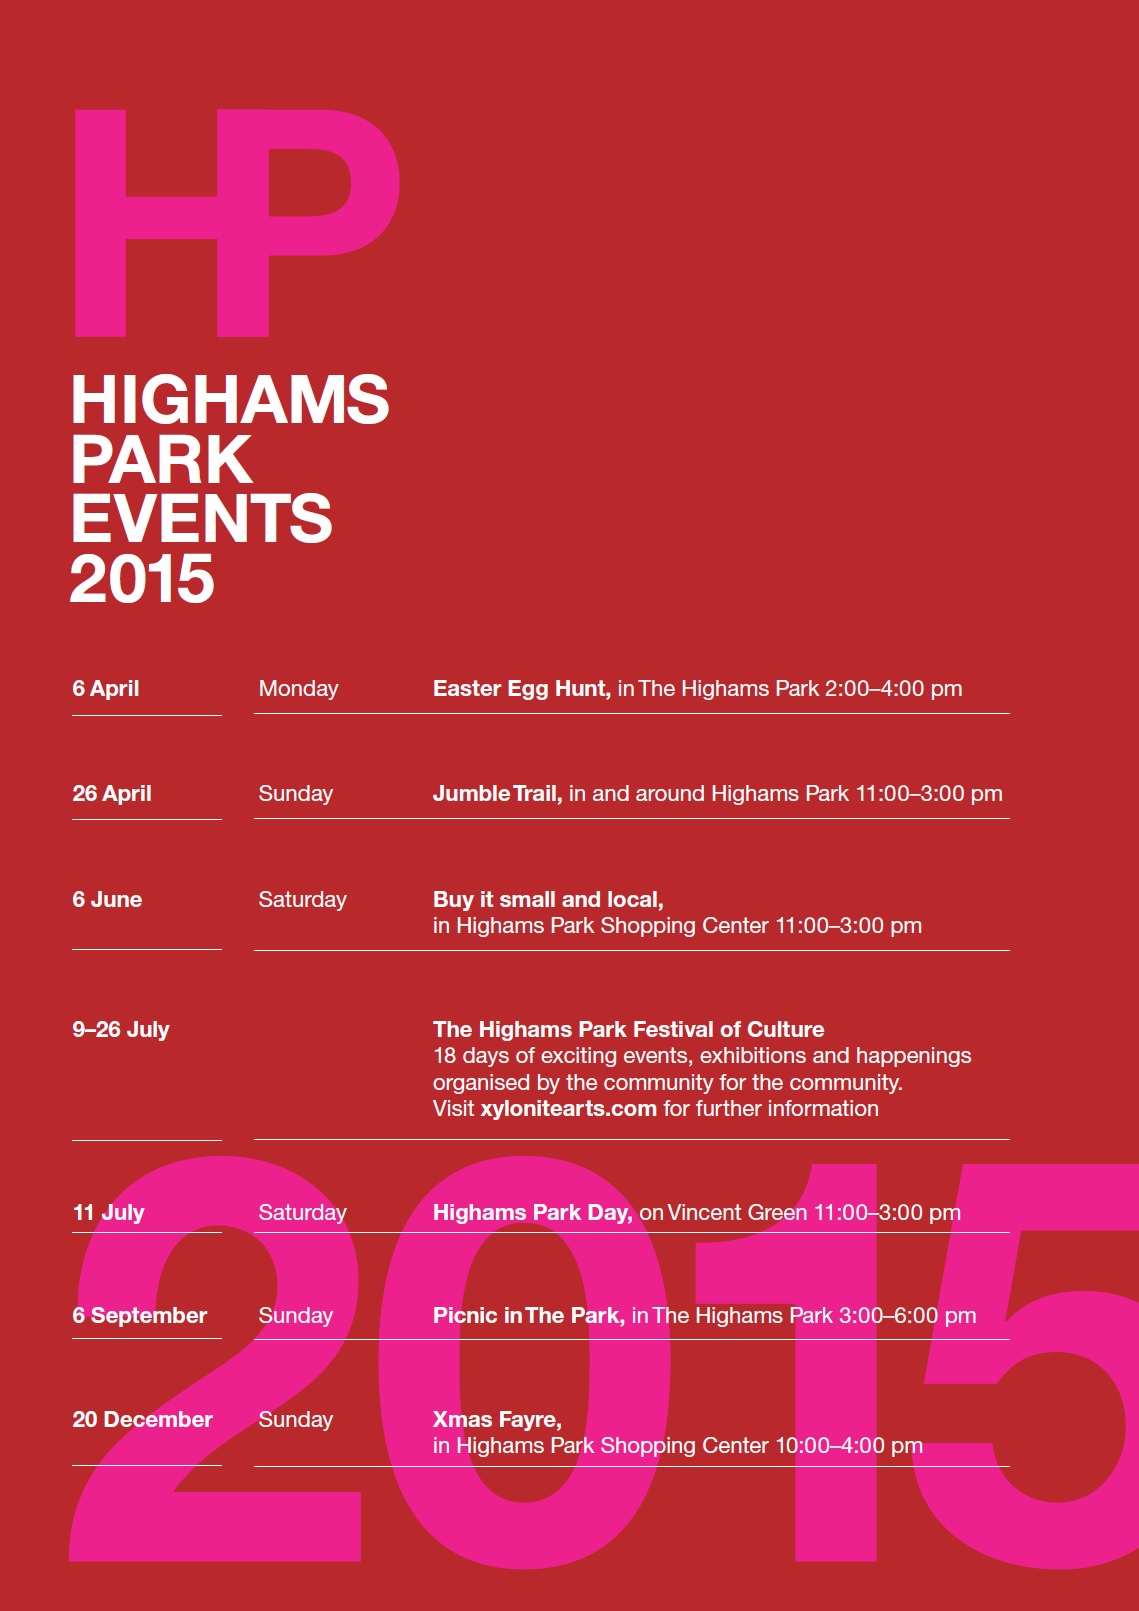 Headline Events Calendar for  Highams Park in 2015